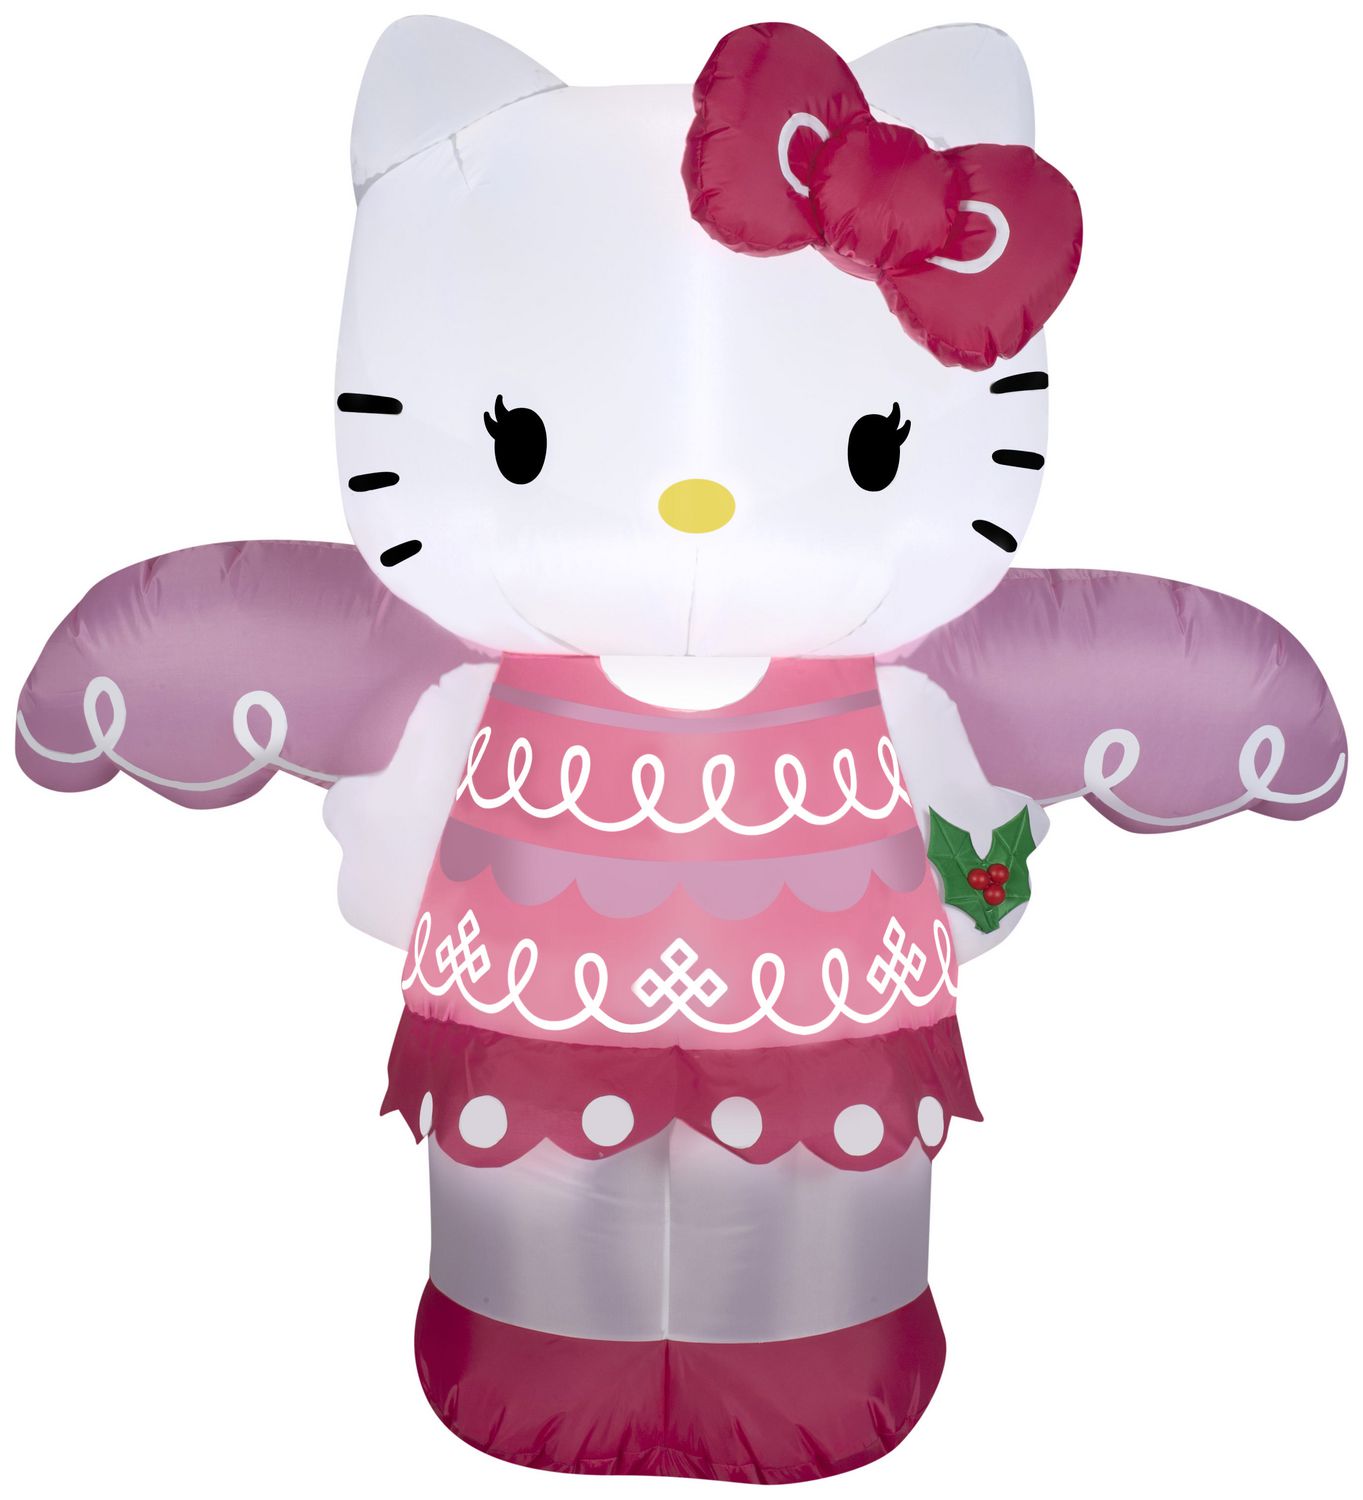 Matelas gonflable #HelloKitty Faites-lui plaisir et offrez-lui son matelas  à l'effigie du personnage Hello Kitty ! E…